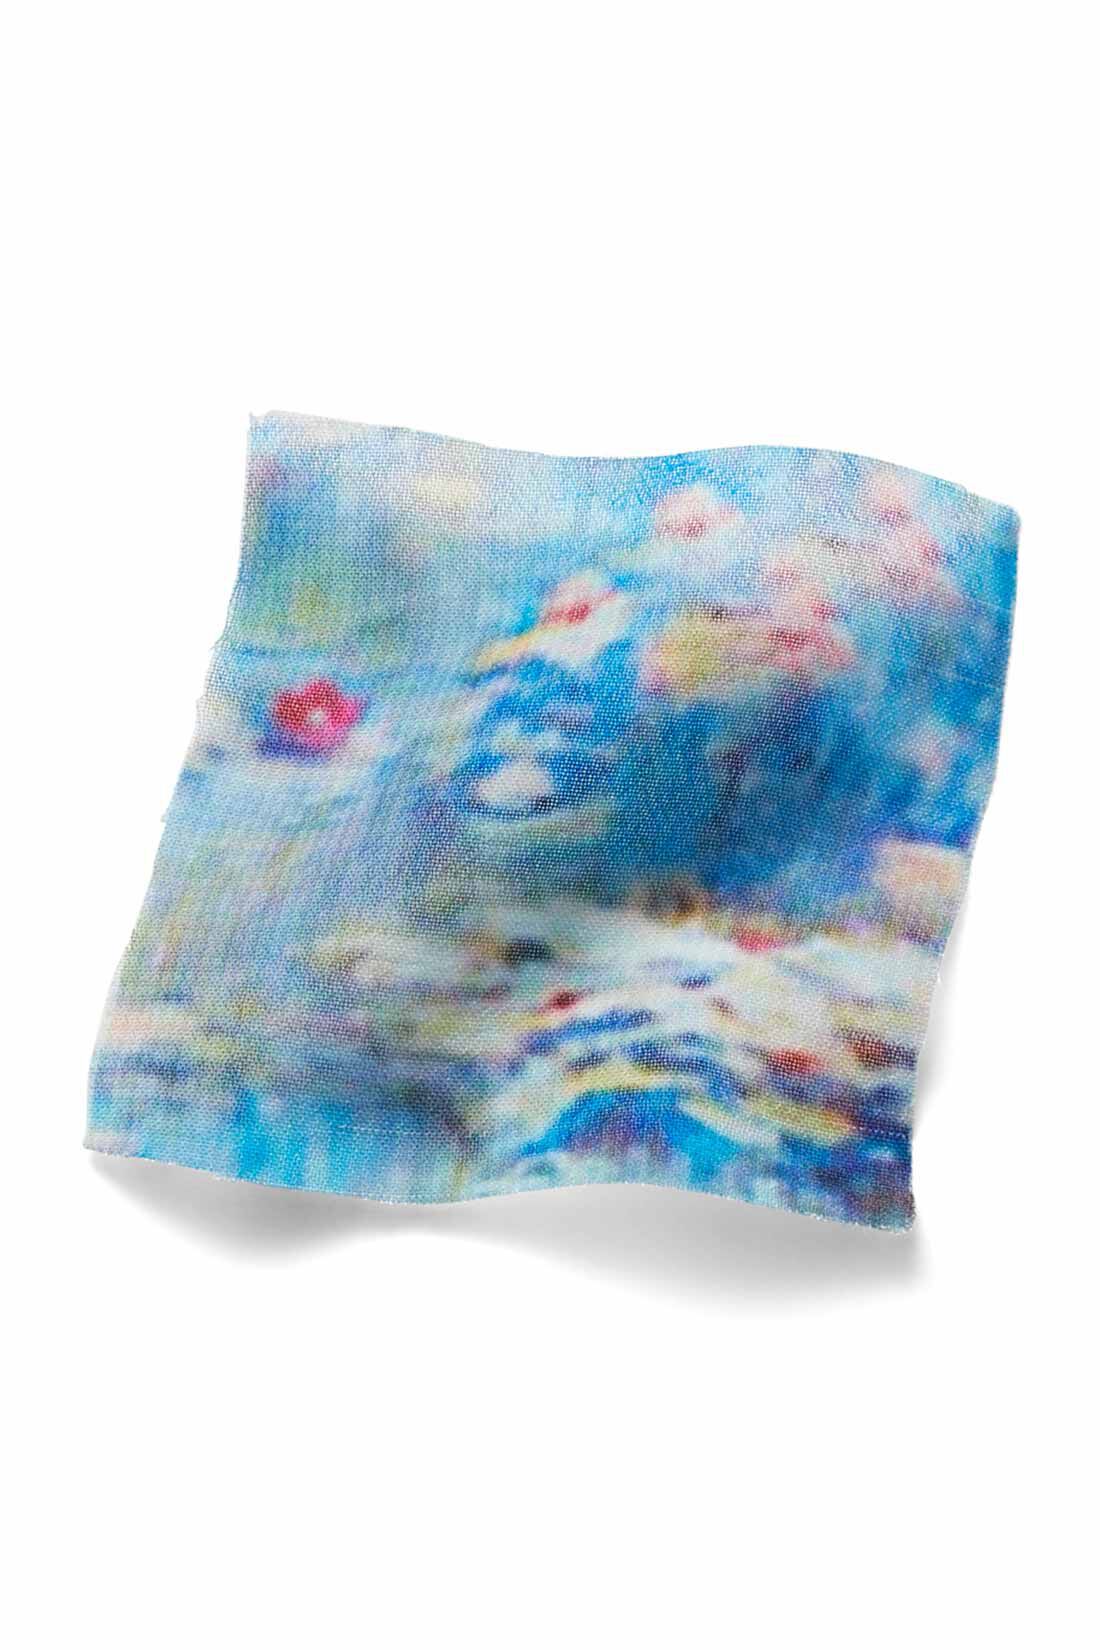 イディット|IEDIT[イディット]　モネの睡蓮をまとうシフォンスカート〈ブルー〉|原画をもとにパターンを起こし、水面を思わせる、透け感のあるシフォン素材にプリント。 ※お届けするカラーとは異なります。